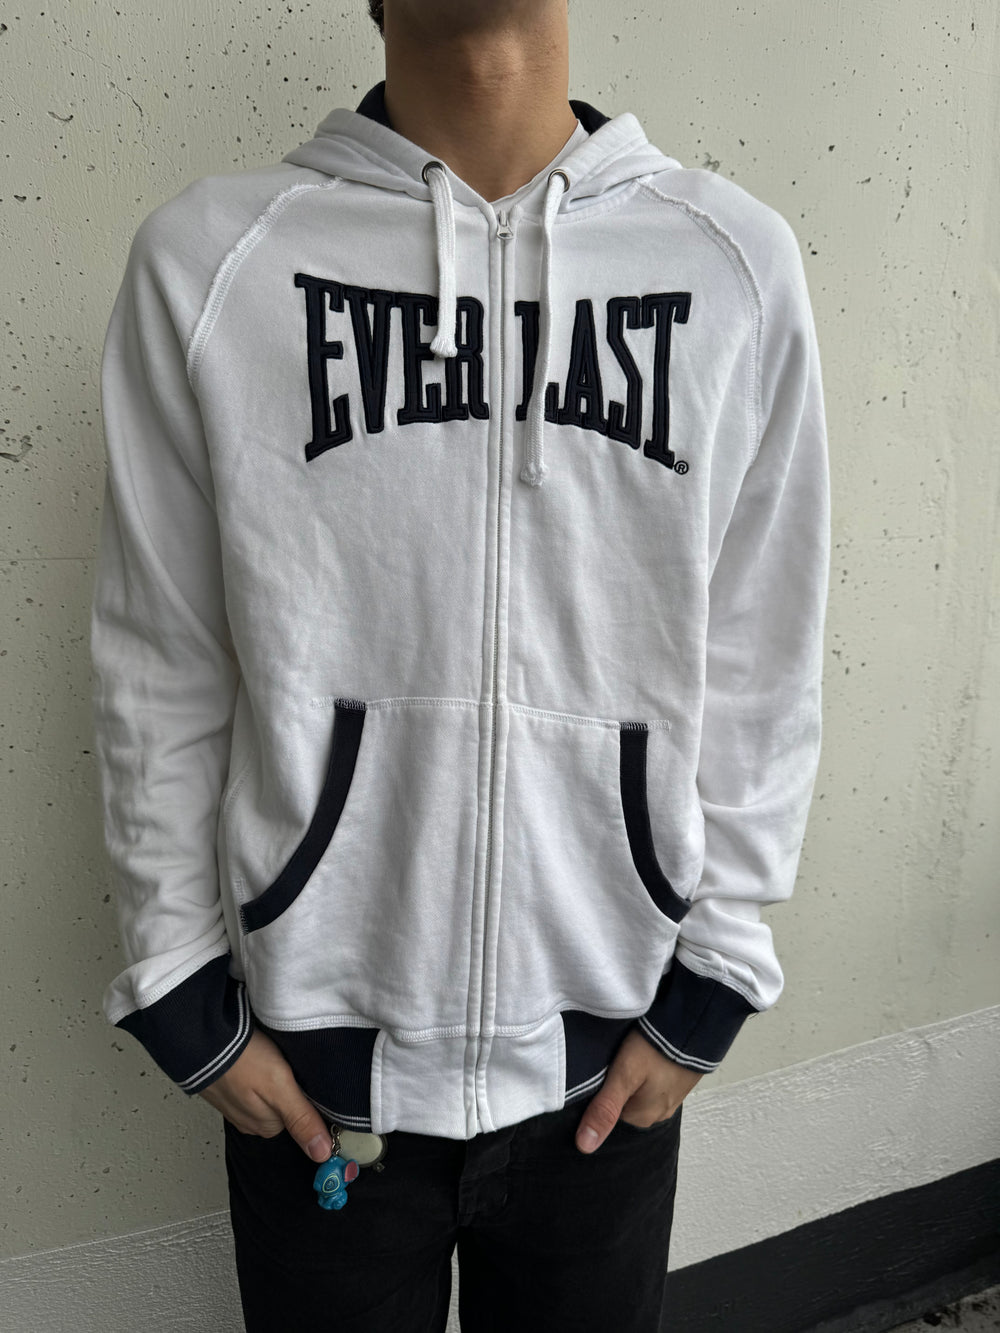 Early 2000s Everlast Zip Hooded Sweat Jacket (L)